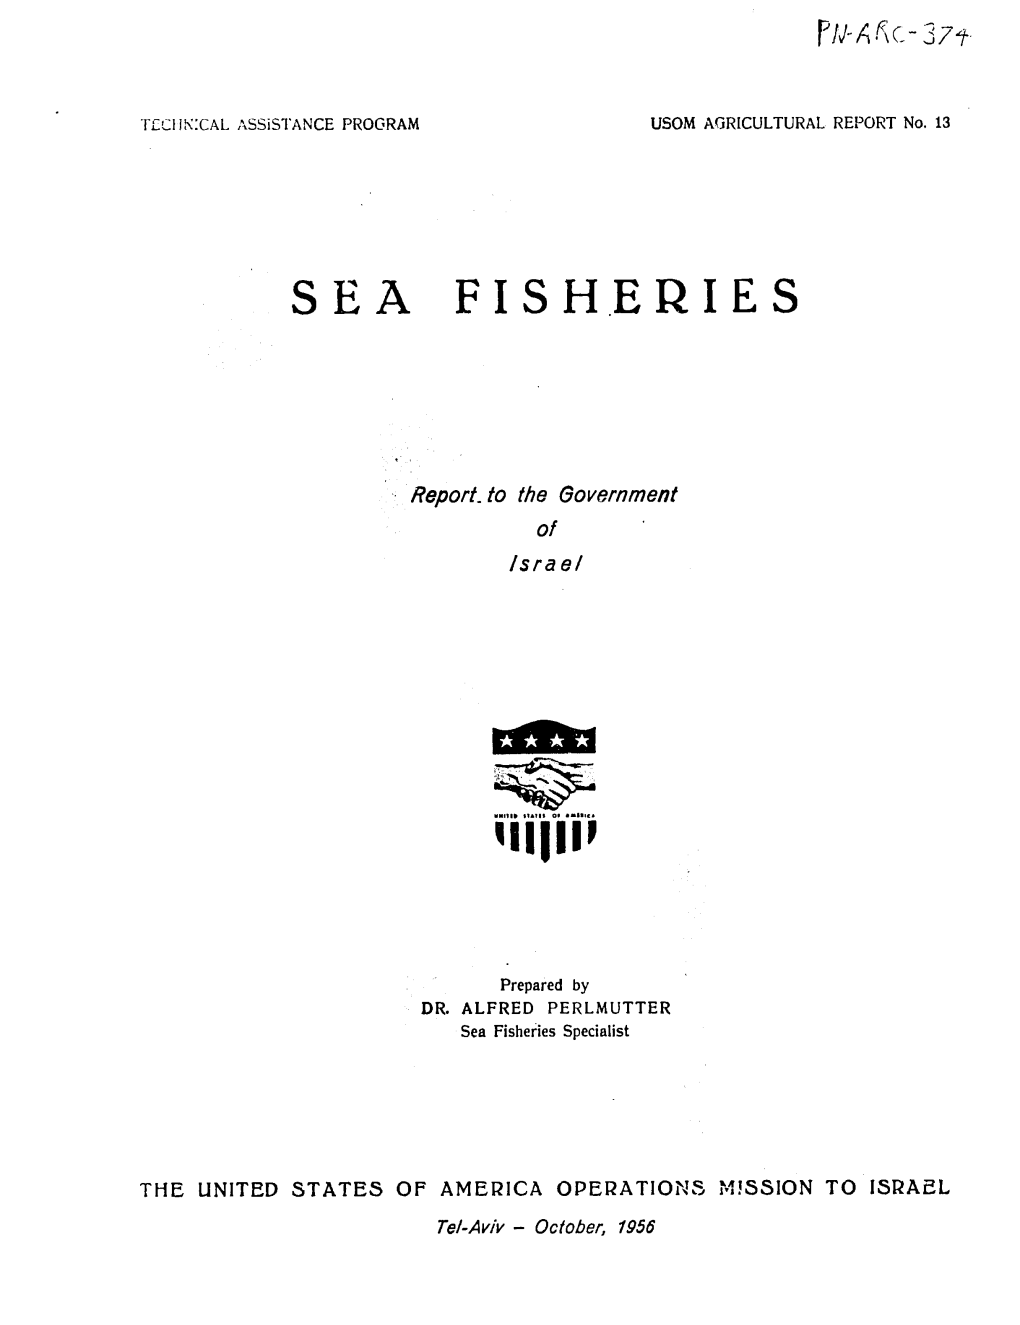 Sea Fisheries